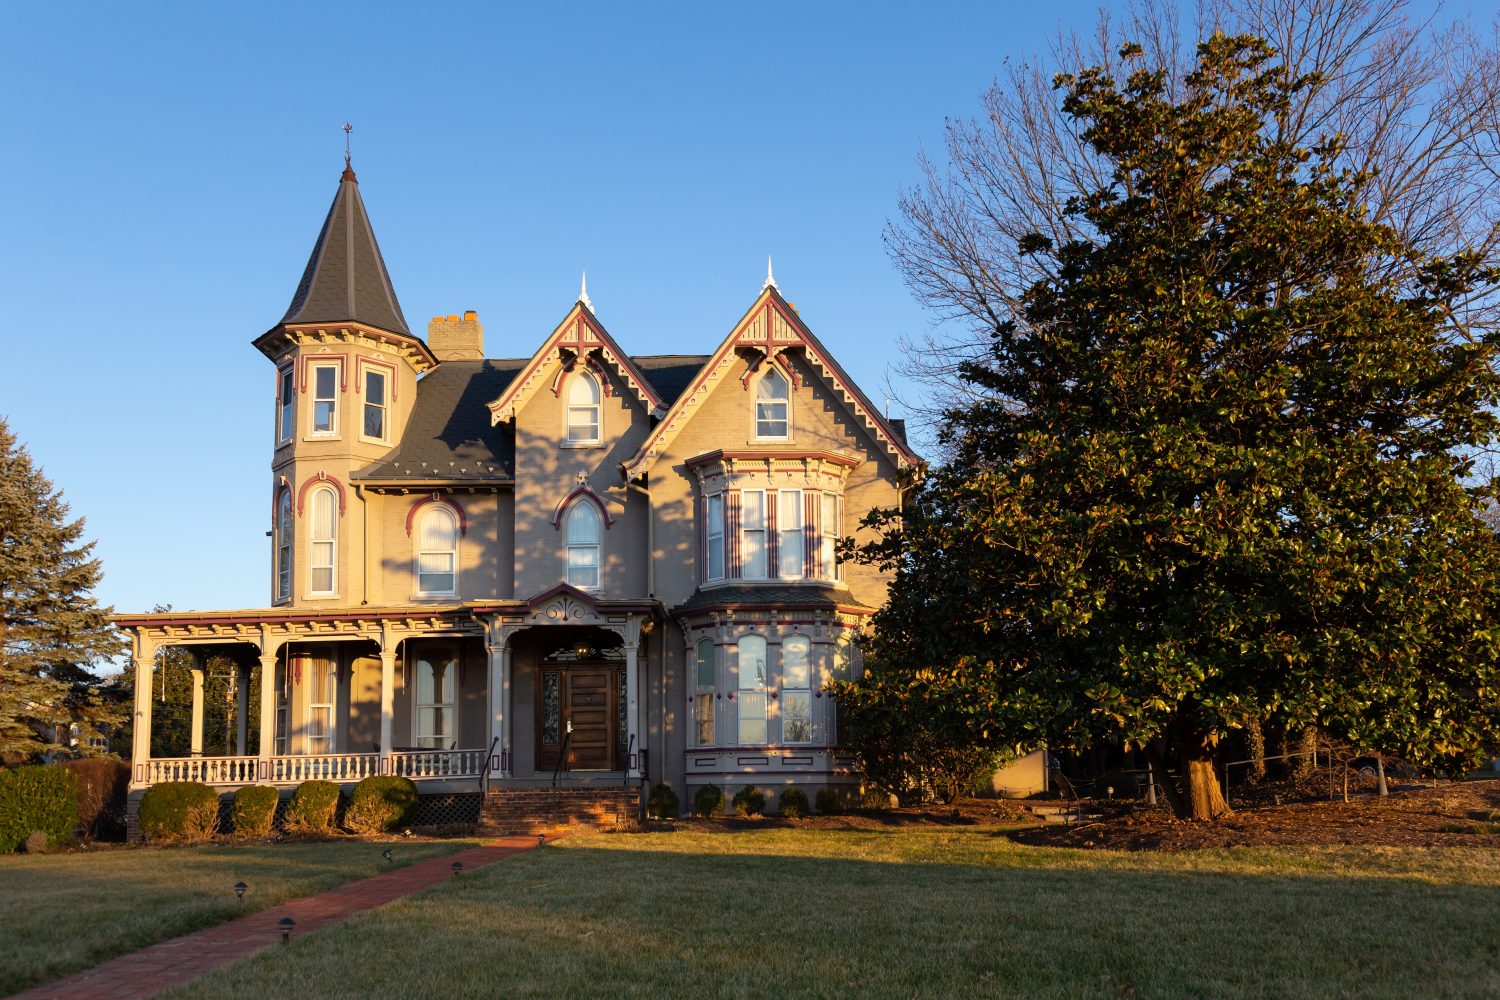 Bella casa in mattoni in stile vittoriano con dettagli in legno e torre vista durante un pomeriggio invernale d'ora d'oro, Harrisonburg, Virginia, Stati Uniti